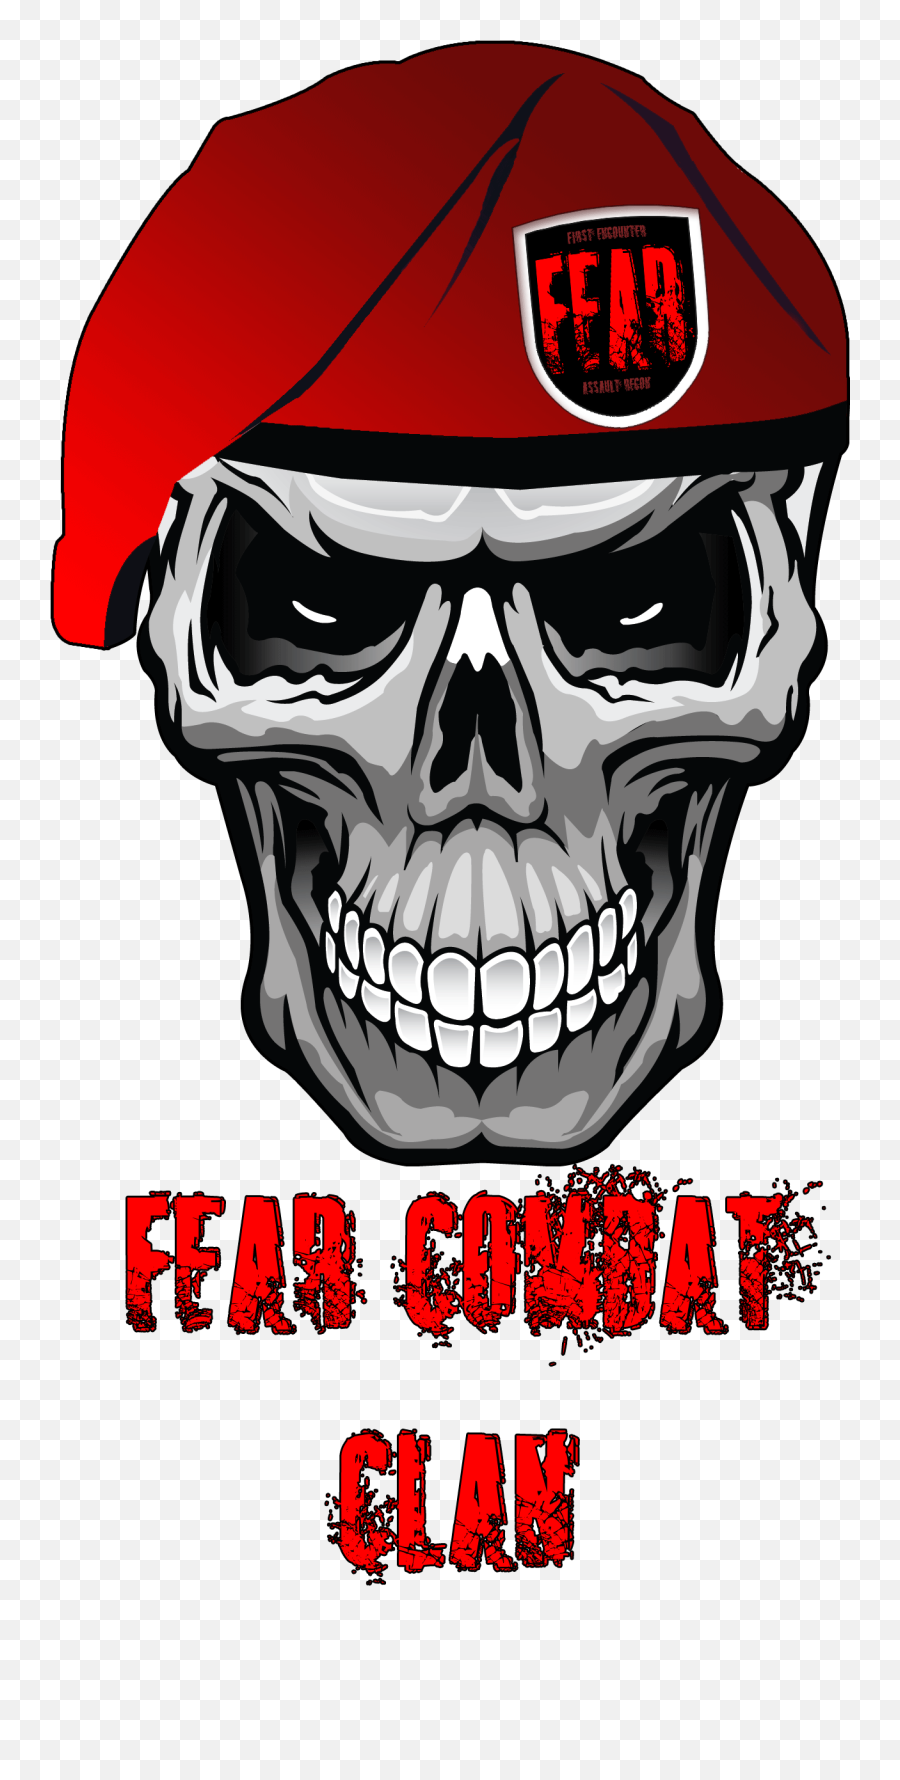 Fear Clan Trading Clan - Clans Escape From Tarkov Forum Skull Stickers Emoji,Pog Emoji